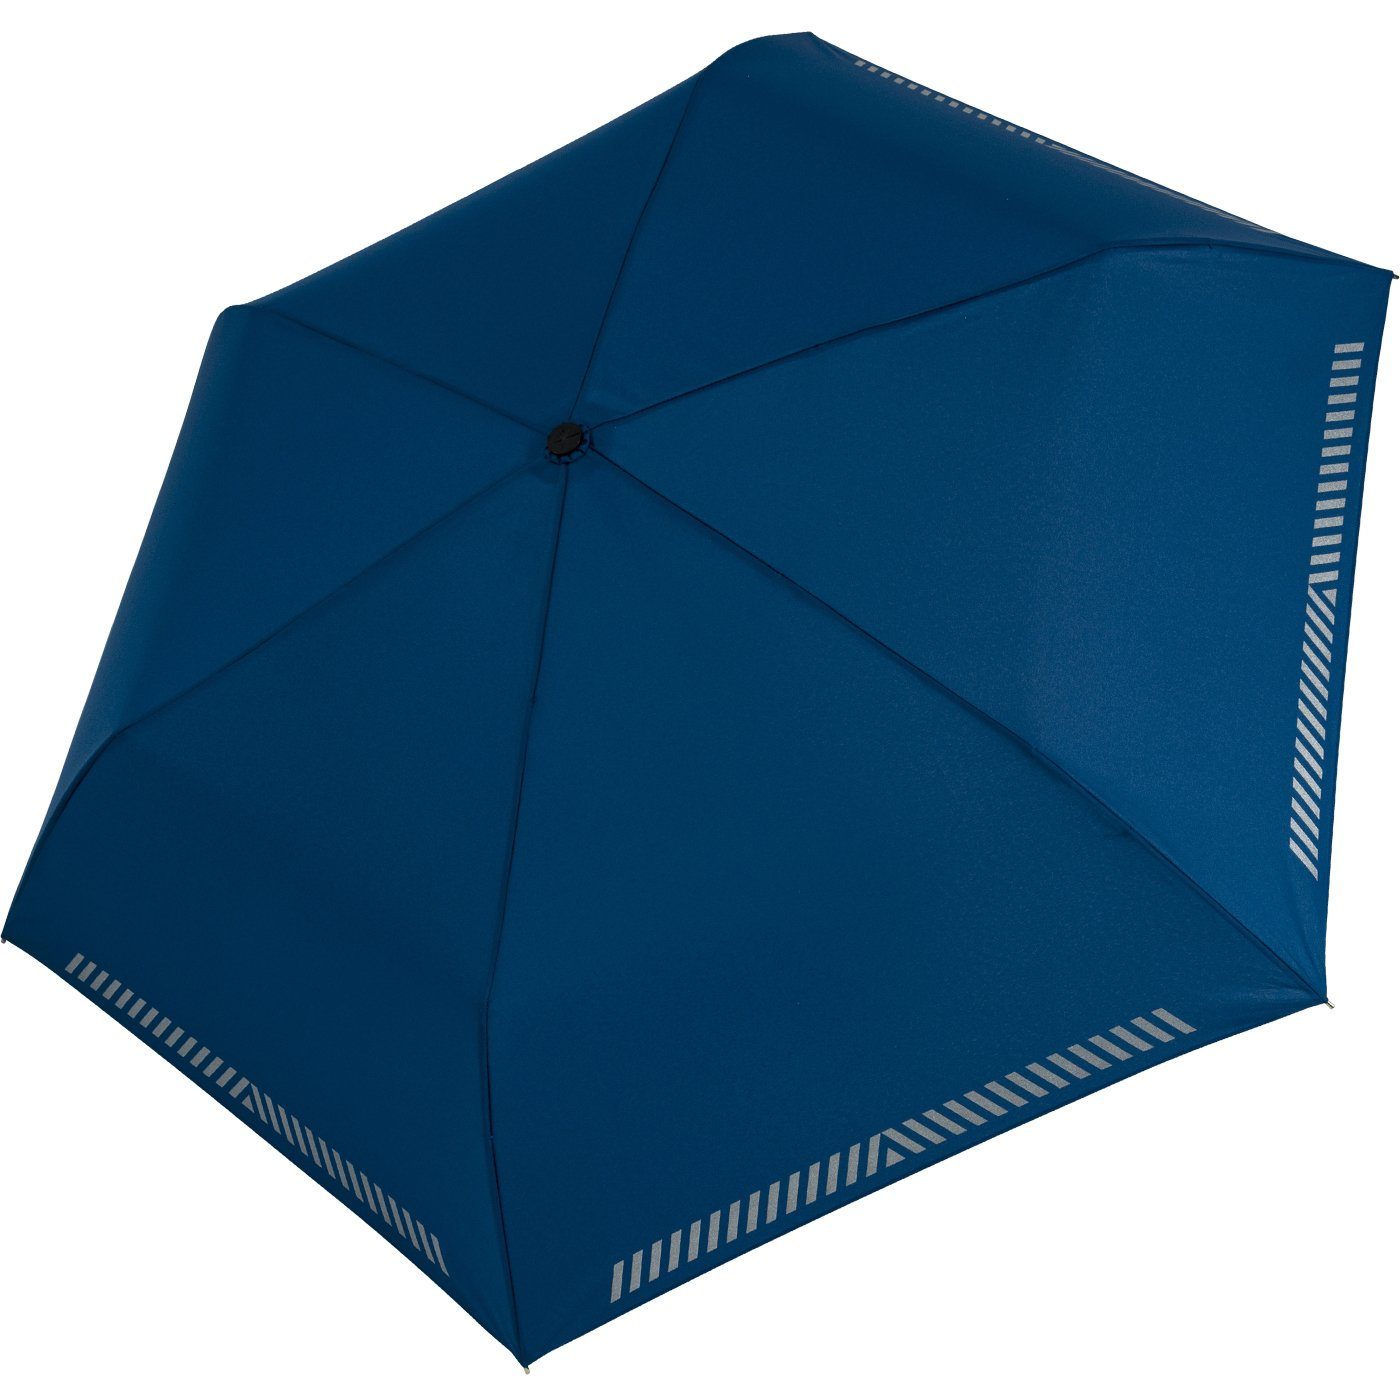 blau iX-brella Safety Taschenregenschirm Kinderschirm Mini reflektierend extra leicht, Reflex